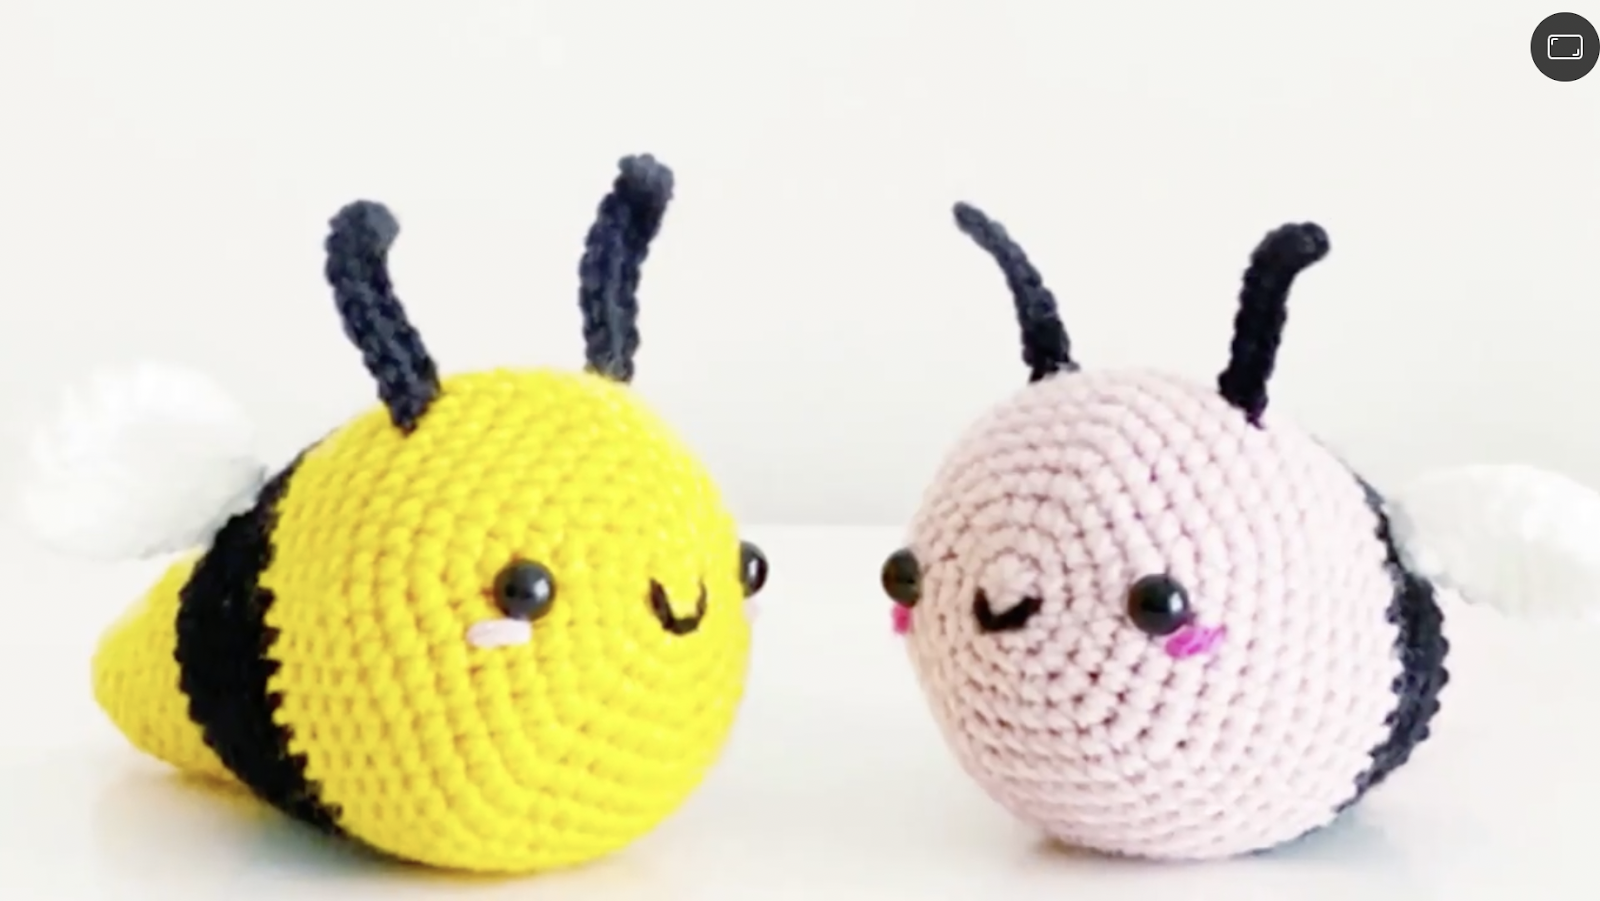 Amigurumi: Crochet Cute Cuddly Creatures